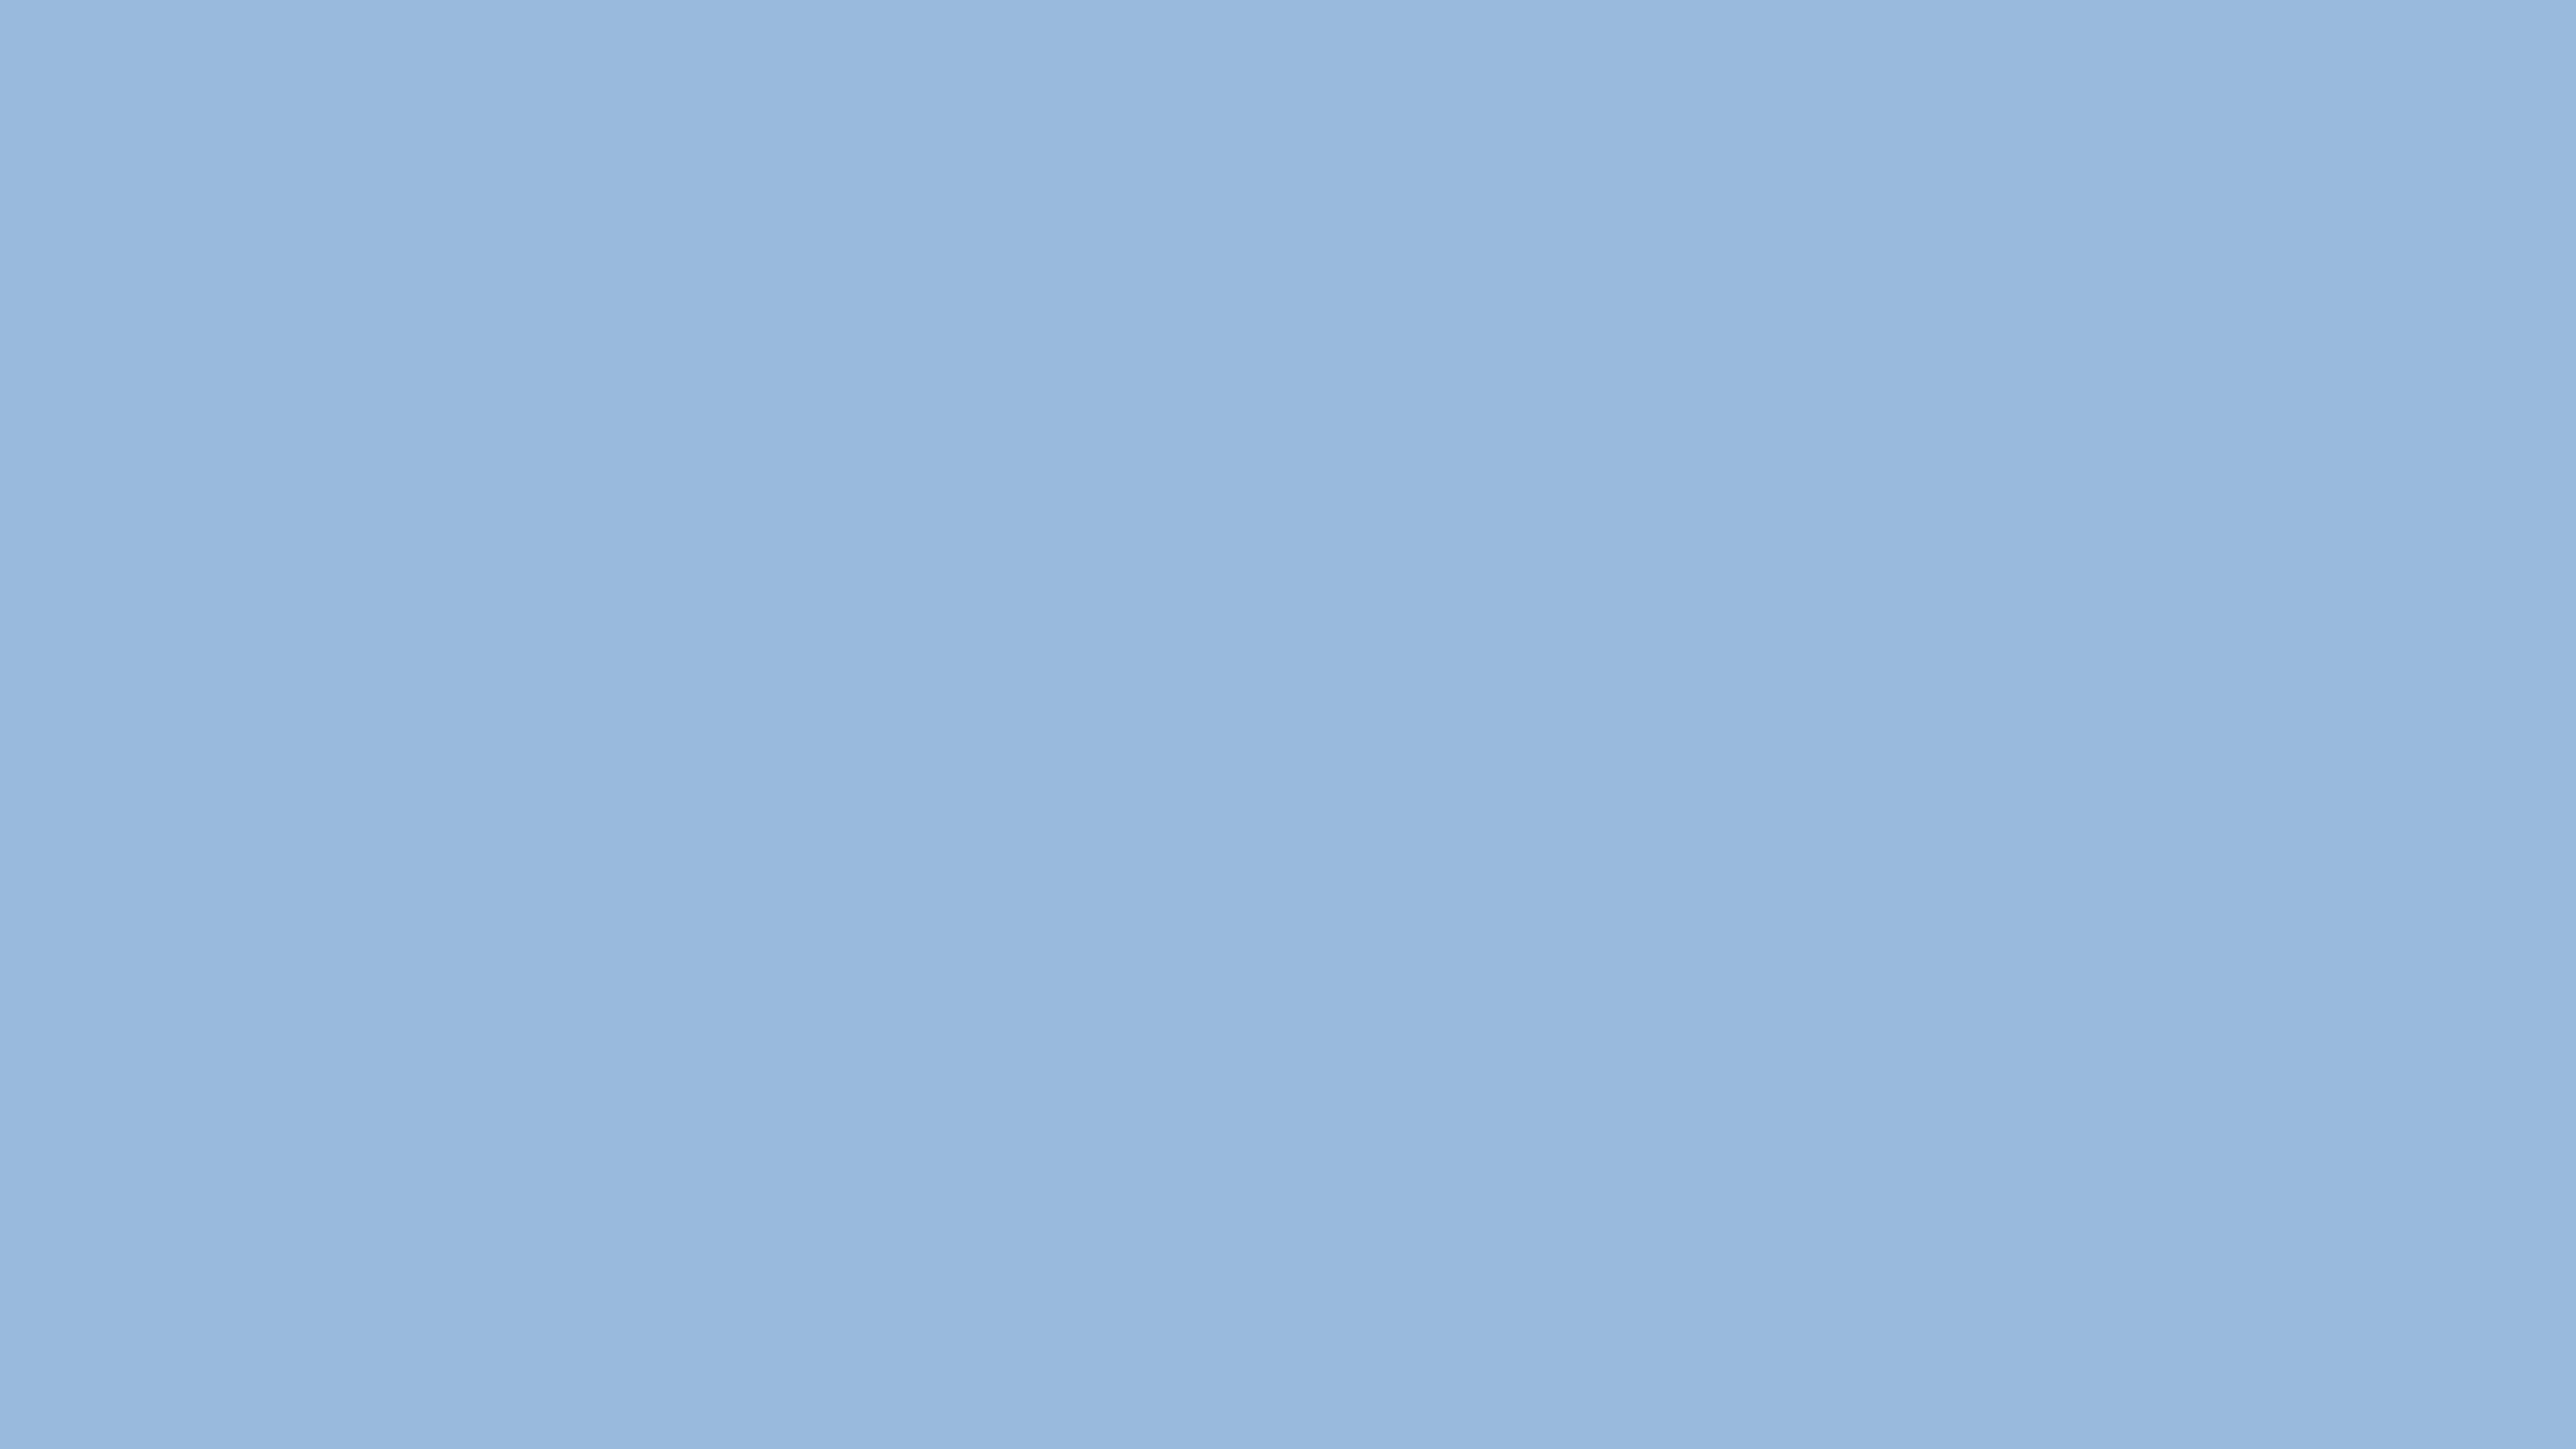 7680x4320 Carolina Blue Solid Color Background